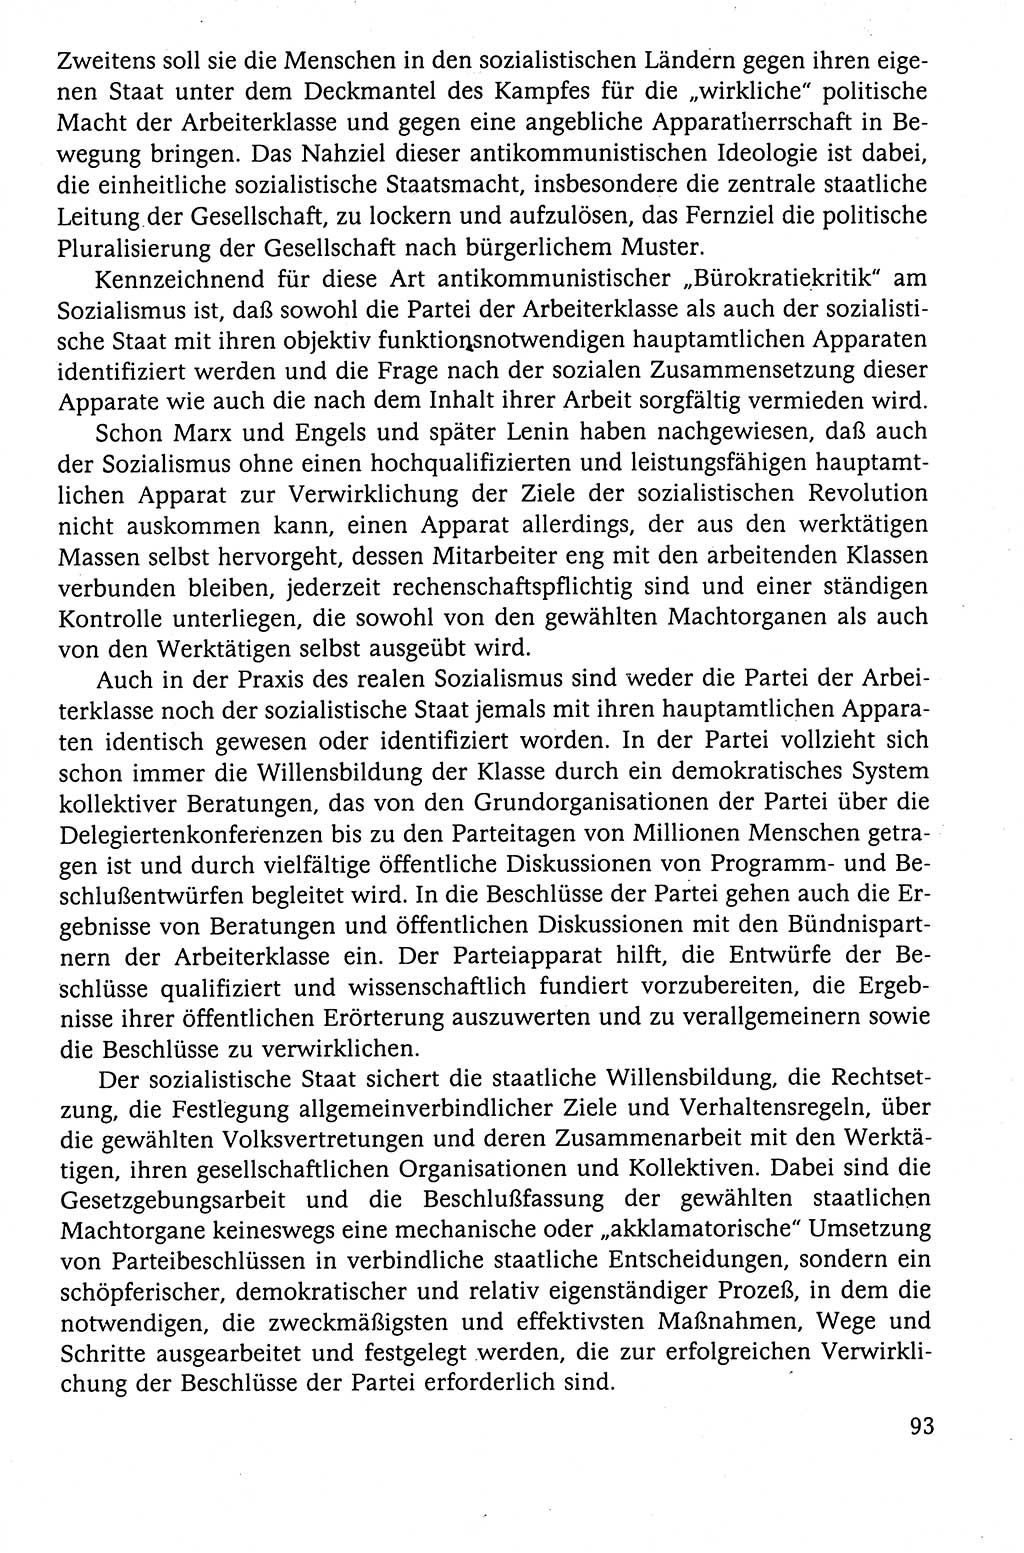 Der Staat im politischen System der DDR (Deutsche Demokratische Republik) 1986, Seite 93 (St. pol. Sys. DDR 1986, S. 93)